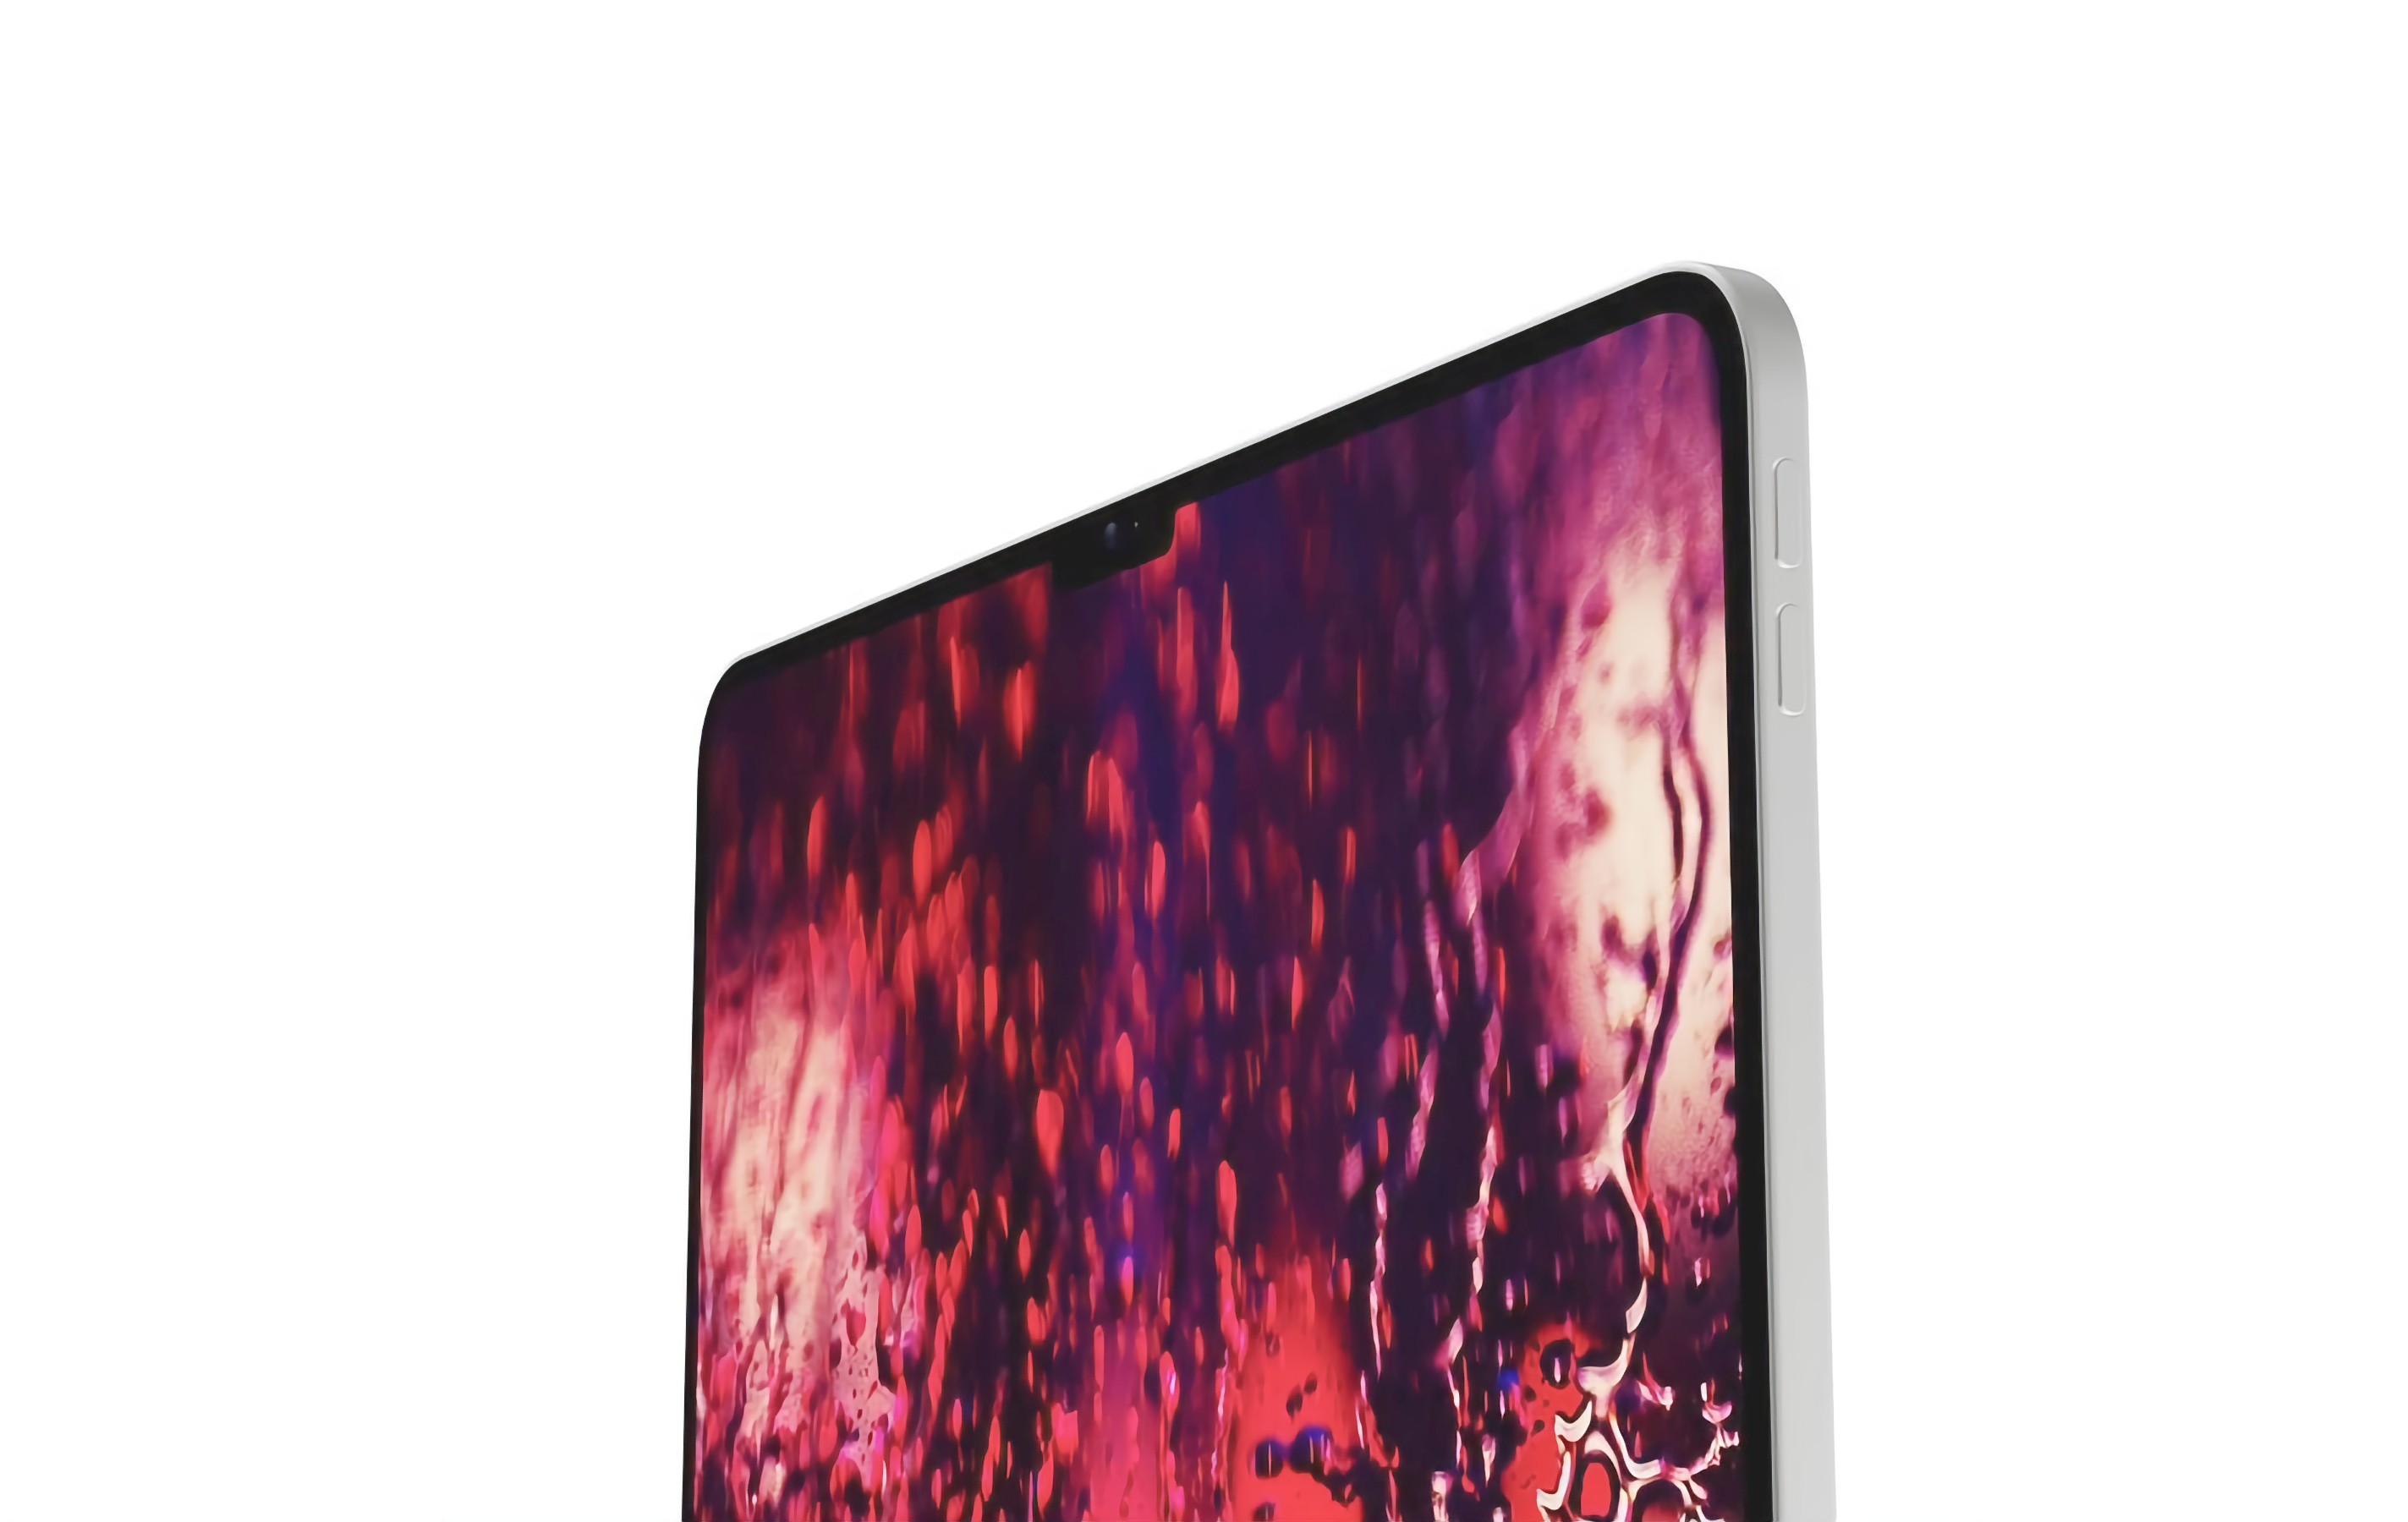 Ritaglio MacBook Pro, chip M2, lunetta in titanio e display OLED: emersi online i primi dettagli del nuovo iPad Pro